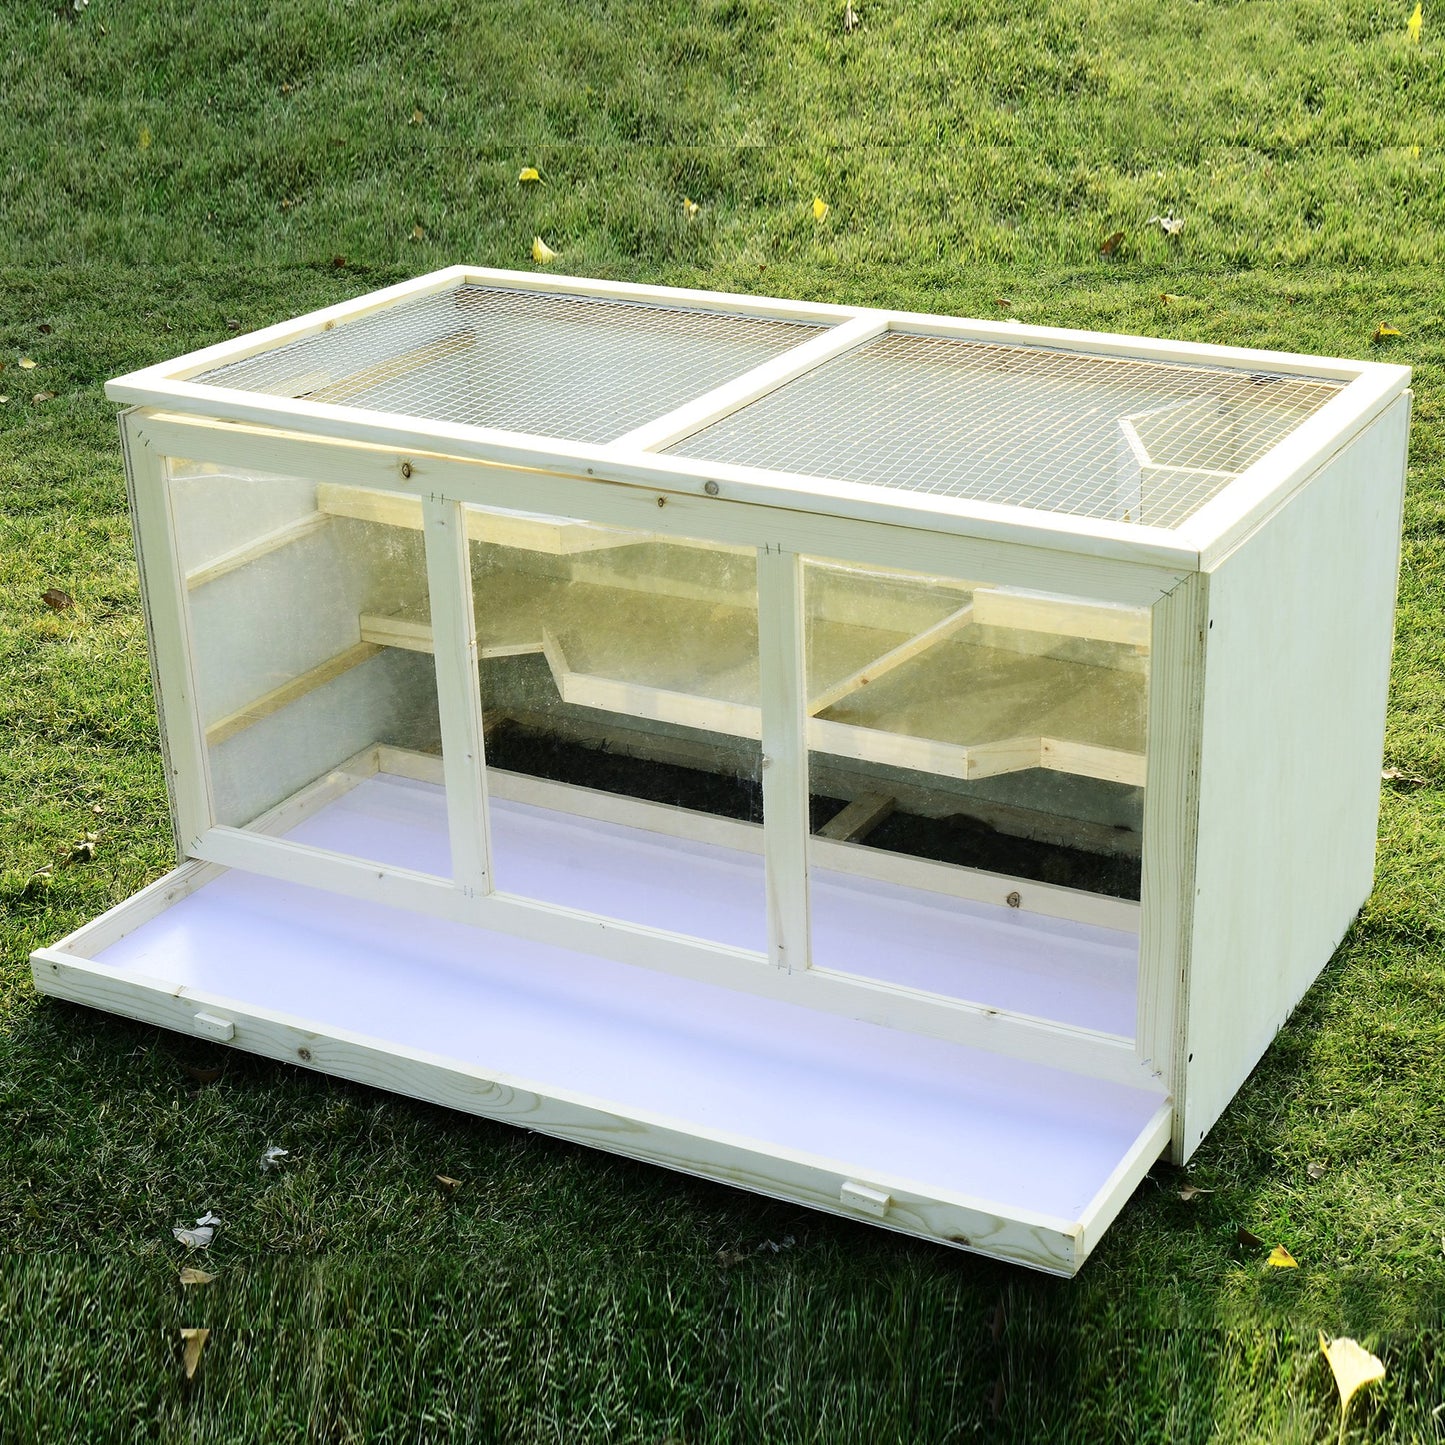 PawHut Hamster Cage, 115Lx60Wx58H cm, Fir, PVC-Natural Wood Colour